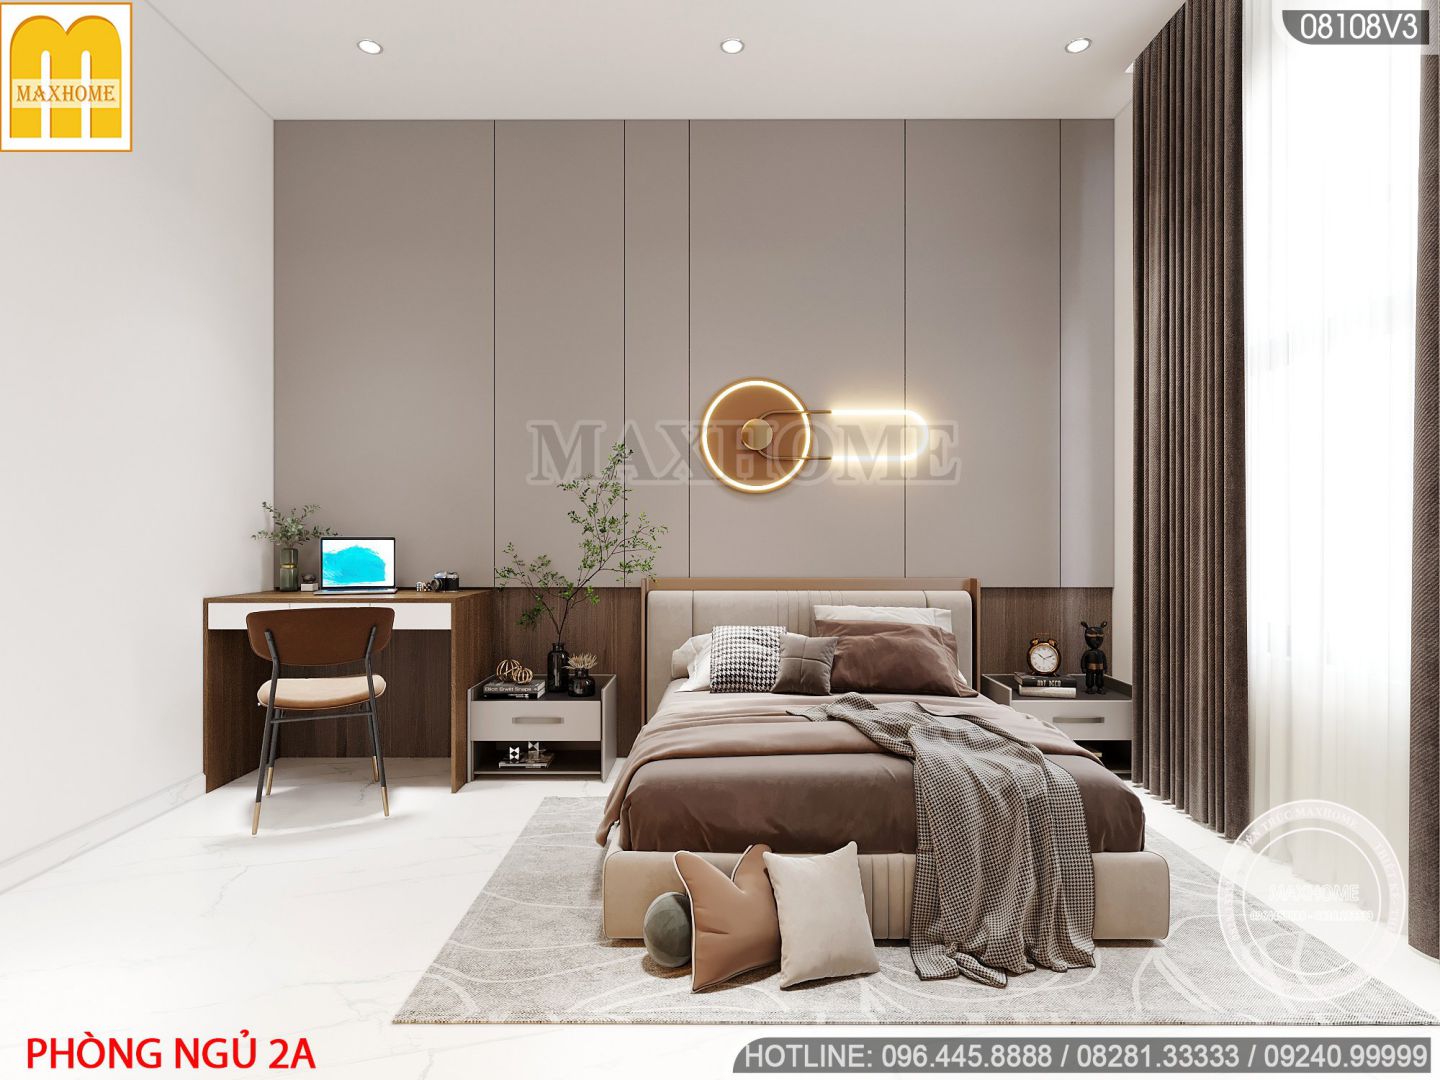 Mẫu nội thất đơn giản cho nhà hiện đại 3 tầng 1 tum với mức giá siêu rẻ